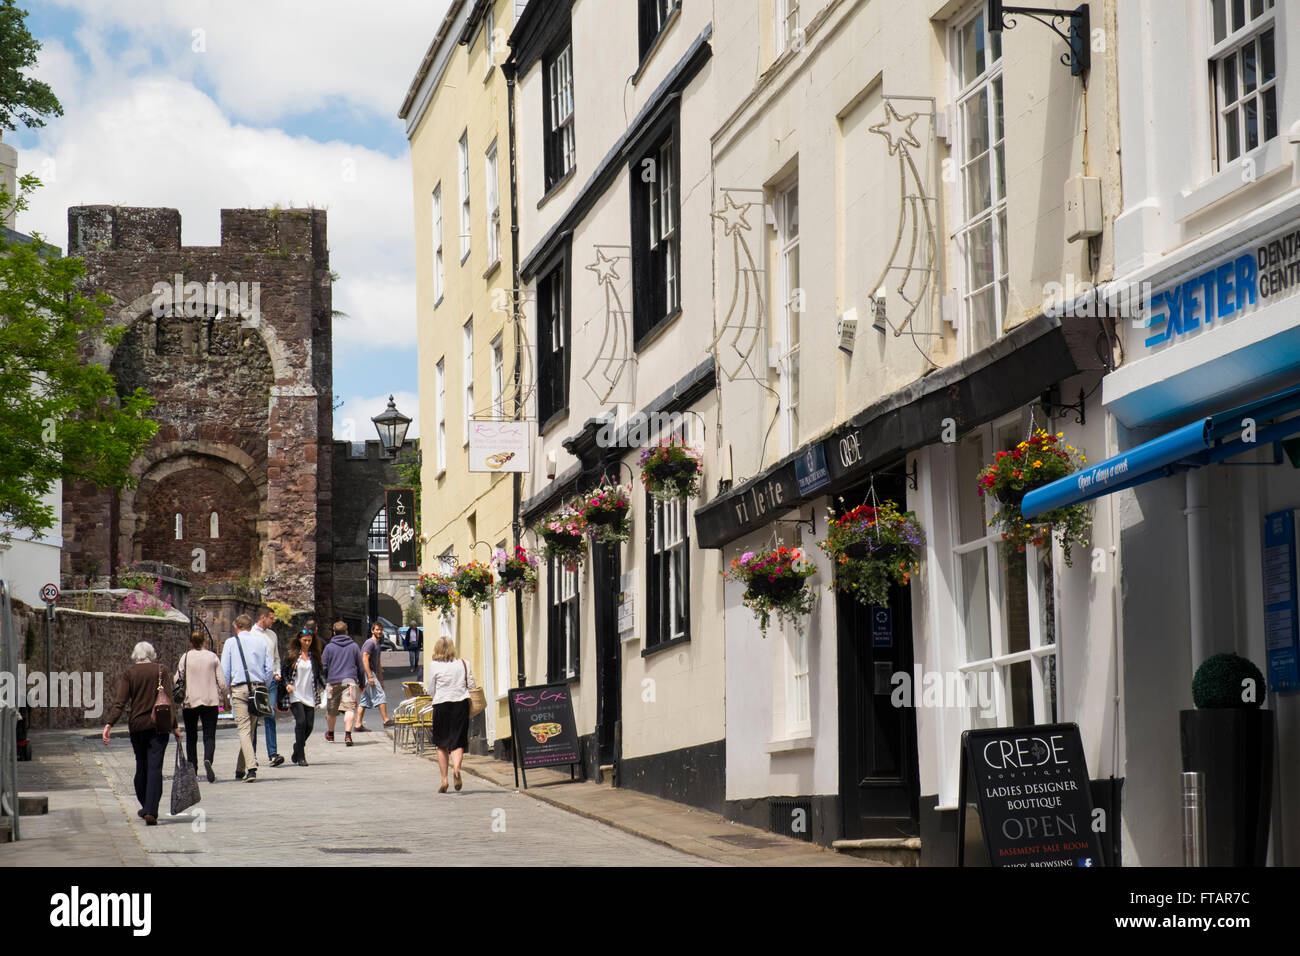 Castle Street in Summer, Exeter, Devon, UK Stock Photo